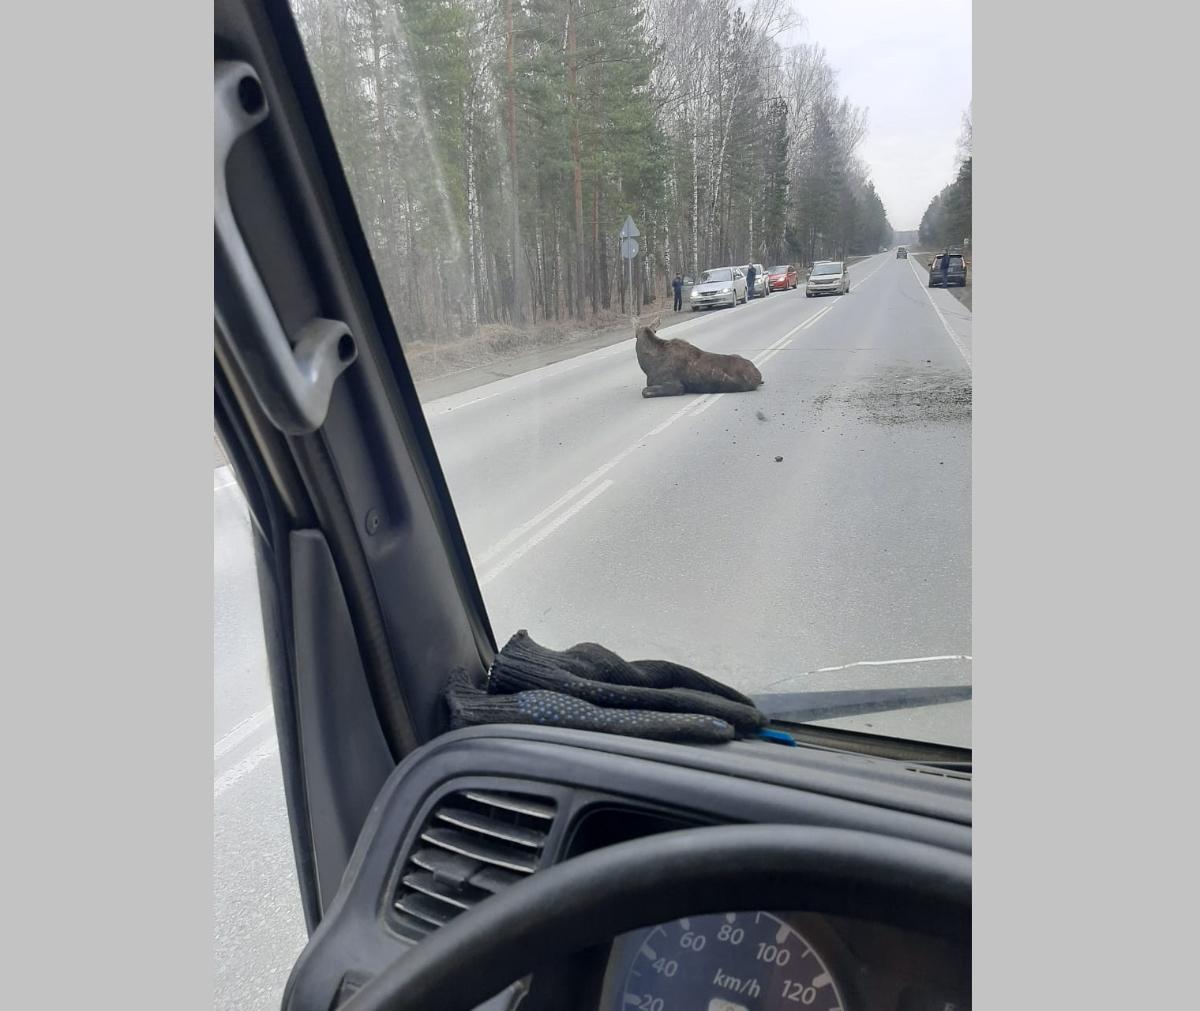 Лося насмерть сбили на трассе под Новосибирском